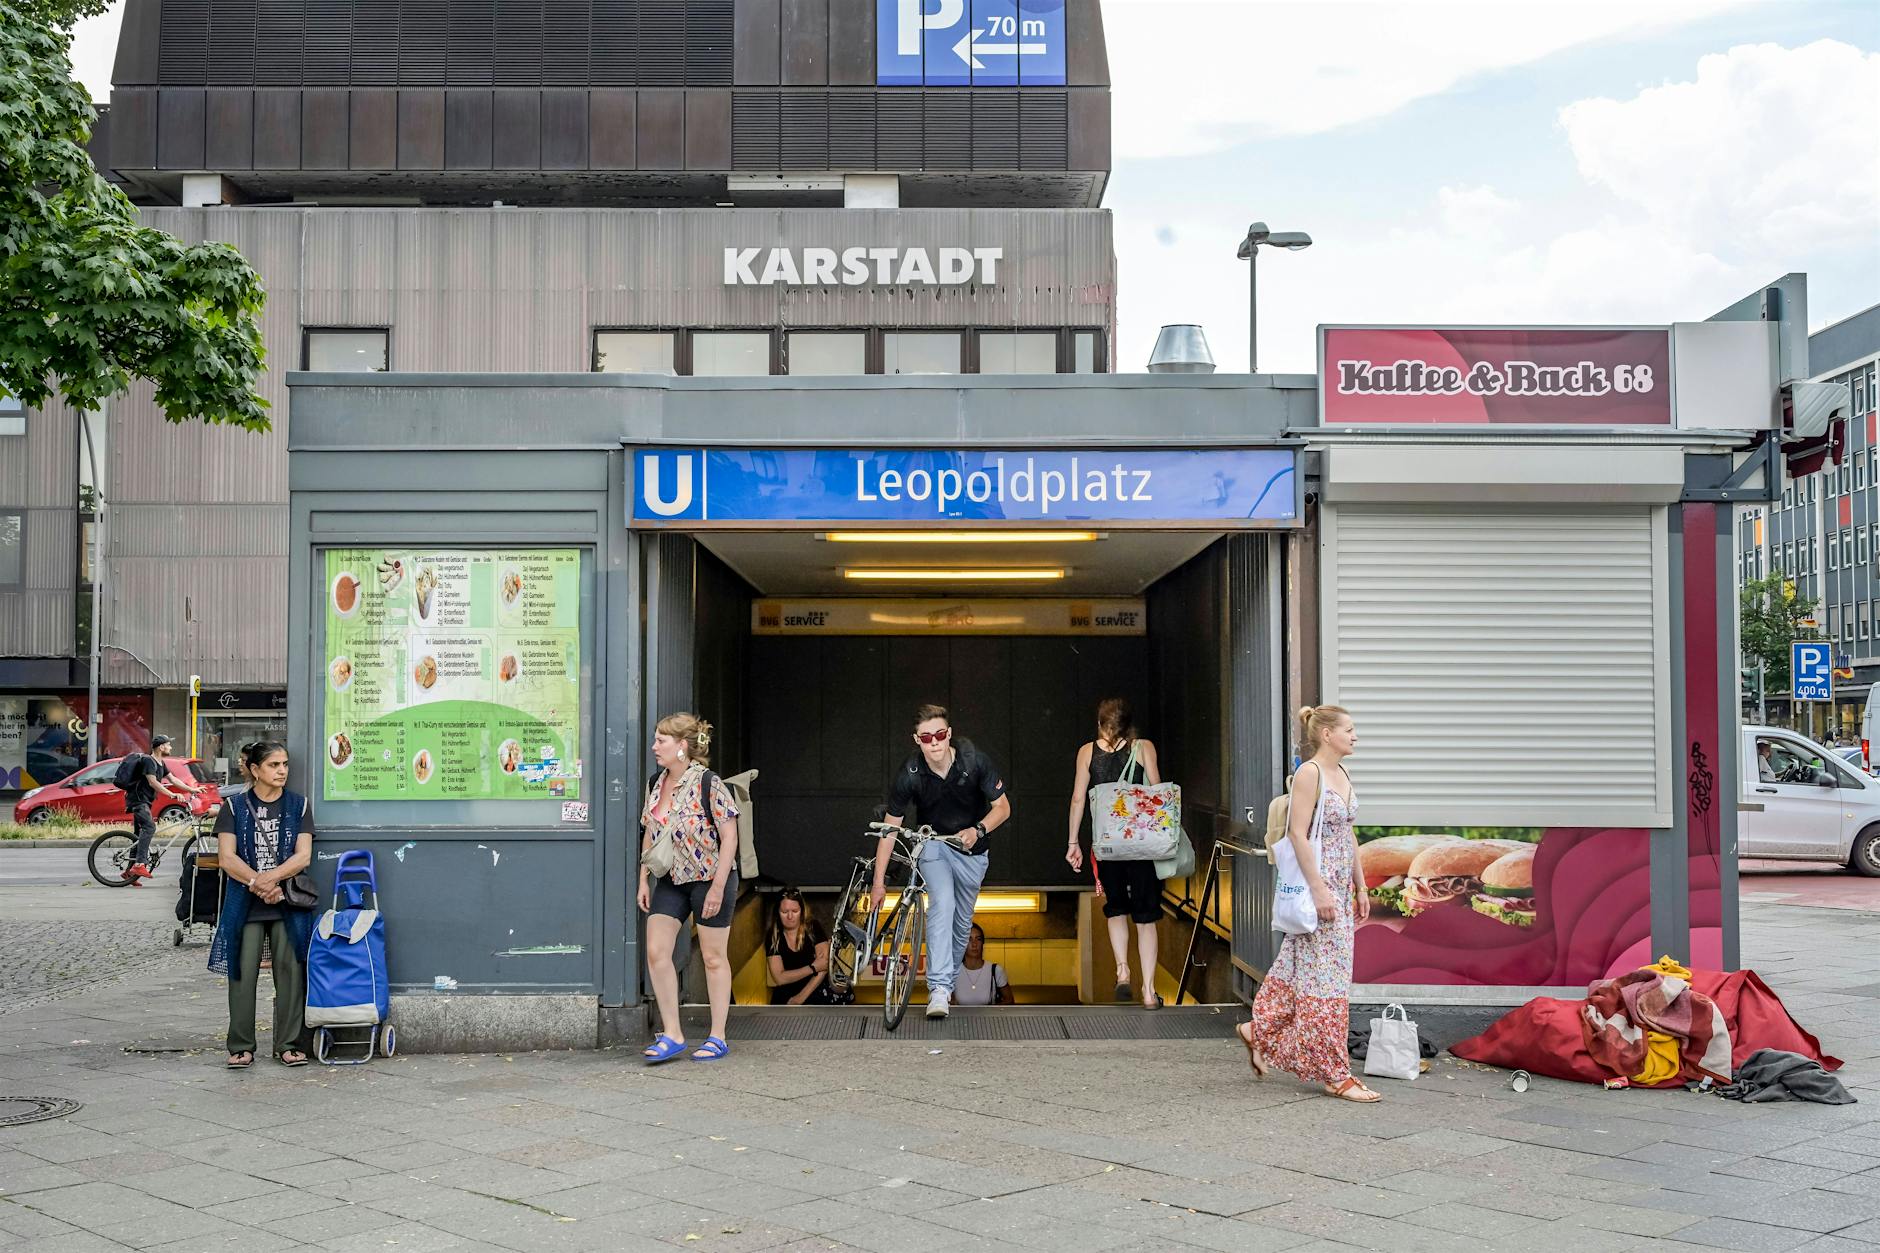 U-Bahnhof Leopoldplatz: Duo greift BVG-Mitarbeiter an